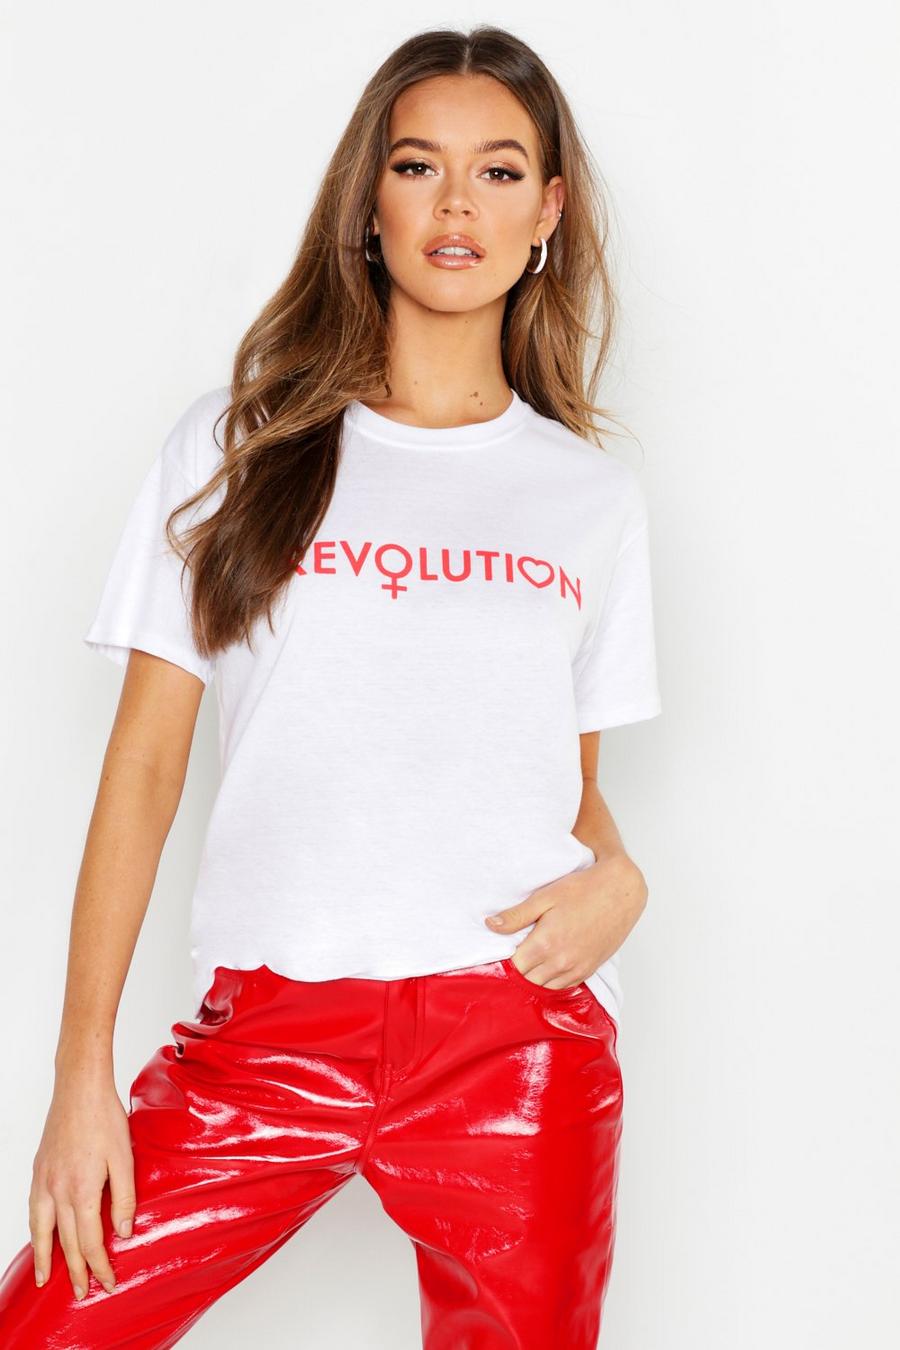 Camiseta con eslogan "Revolution" image number 1